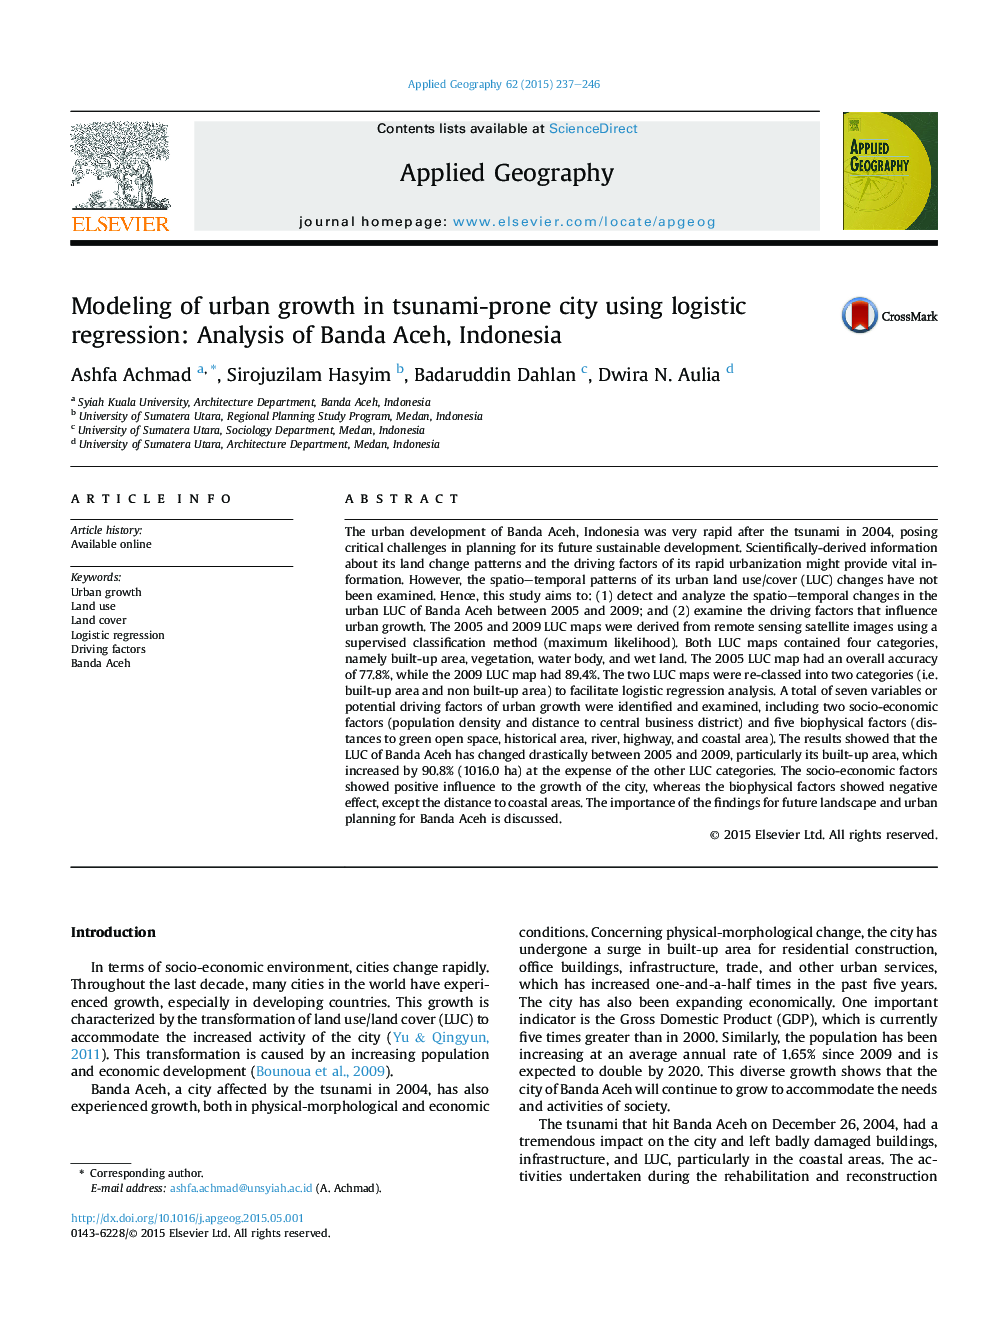 مدل سازی رشد شهری در شهر سونامی با استفاده از رگرسیون لجستیک: تحلیل باندا آچه، اندونزی 